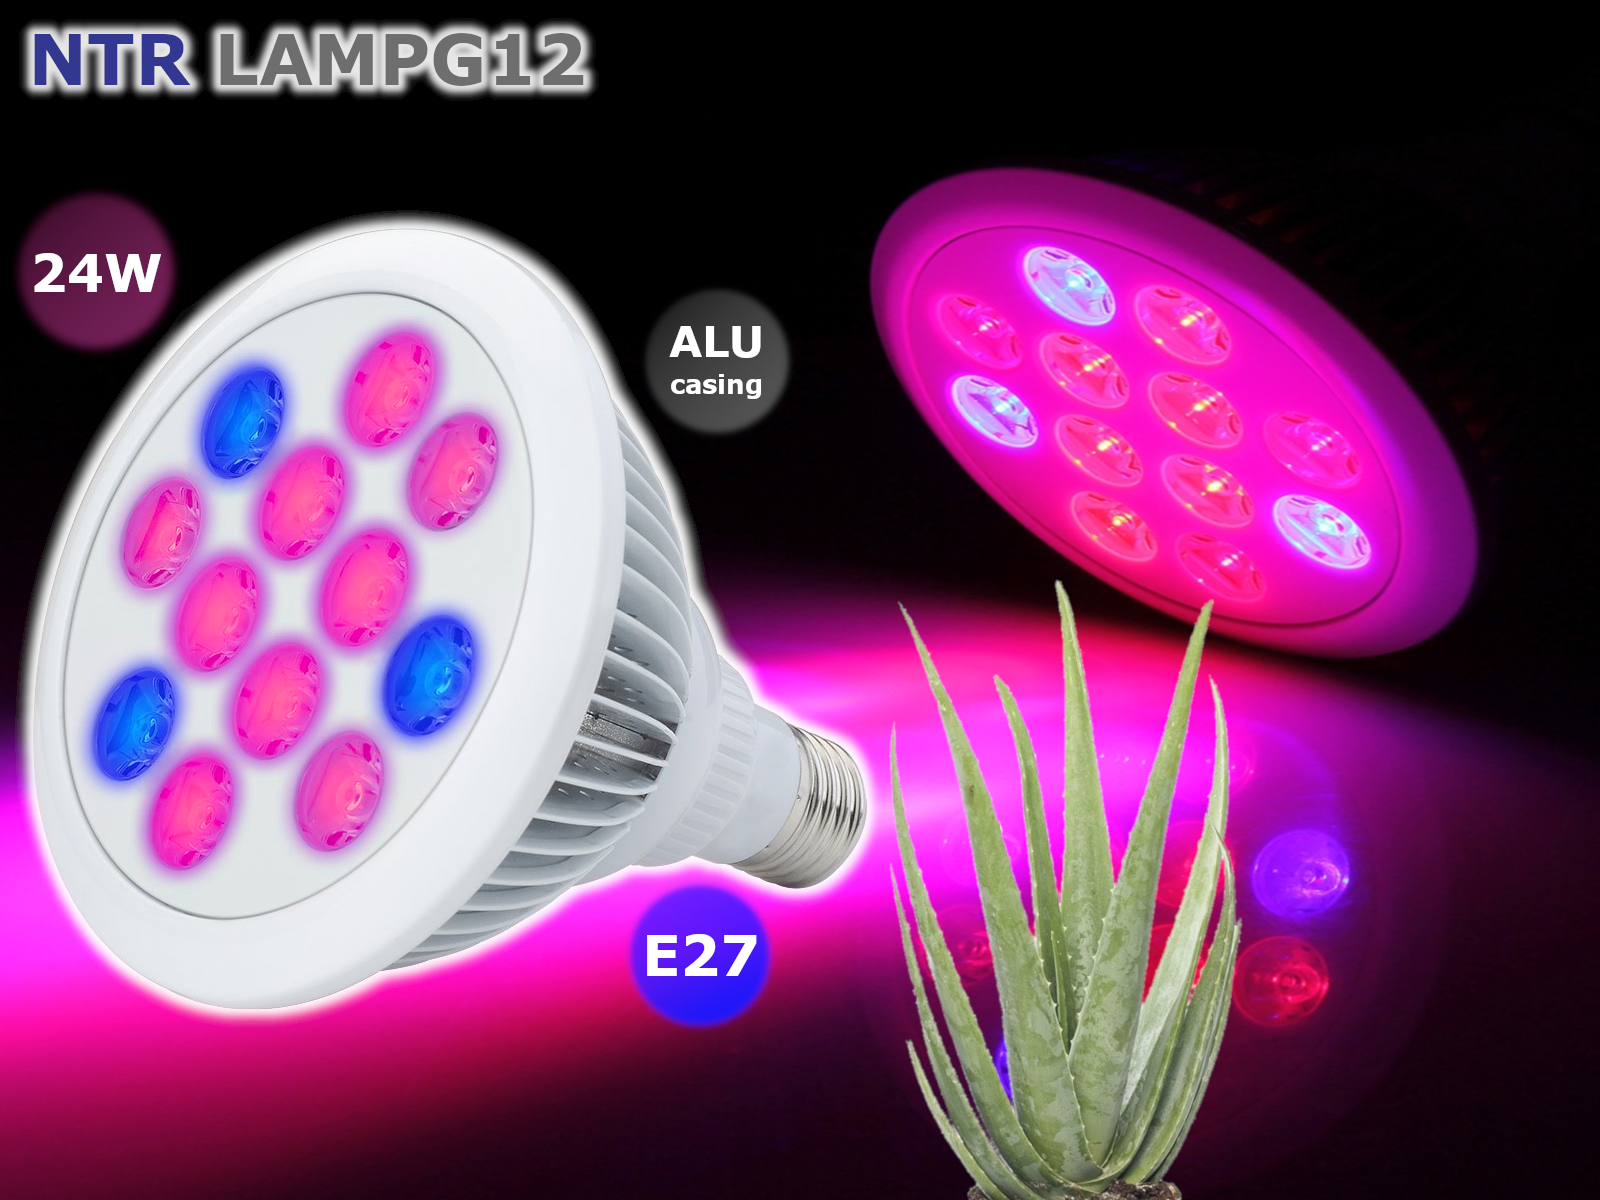 NTR LAMPG12 24W LED növény nevelő lámpa E27 foglalathoz 9x2W piros és 3x2W kék CREE LED 